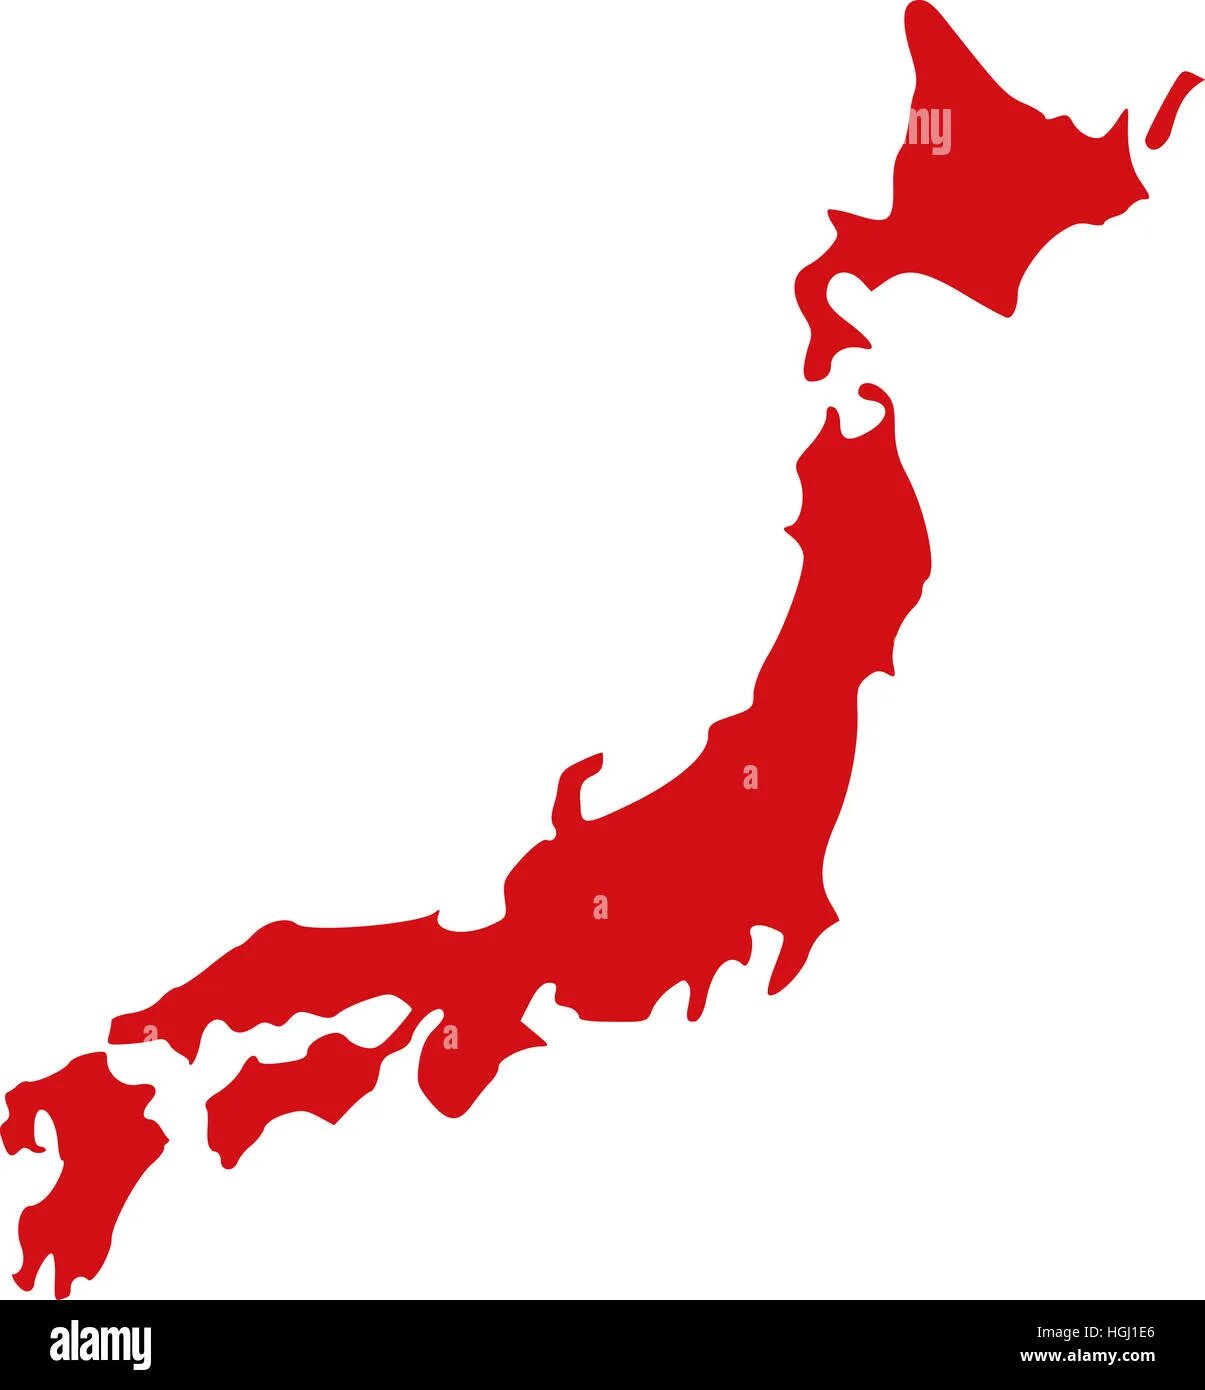 Очертания Японии. Япония на карте. Очертания границ Япония. Контур Японии. Карта японии рисунок